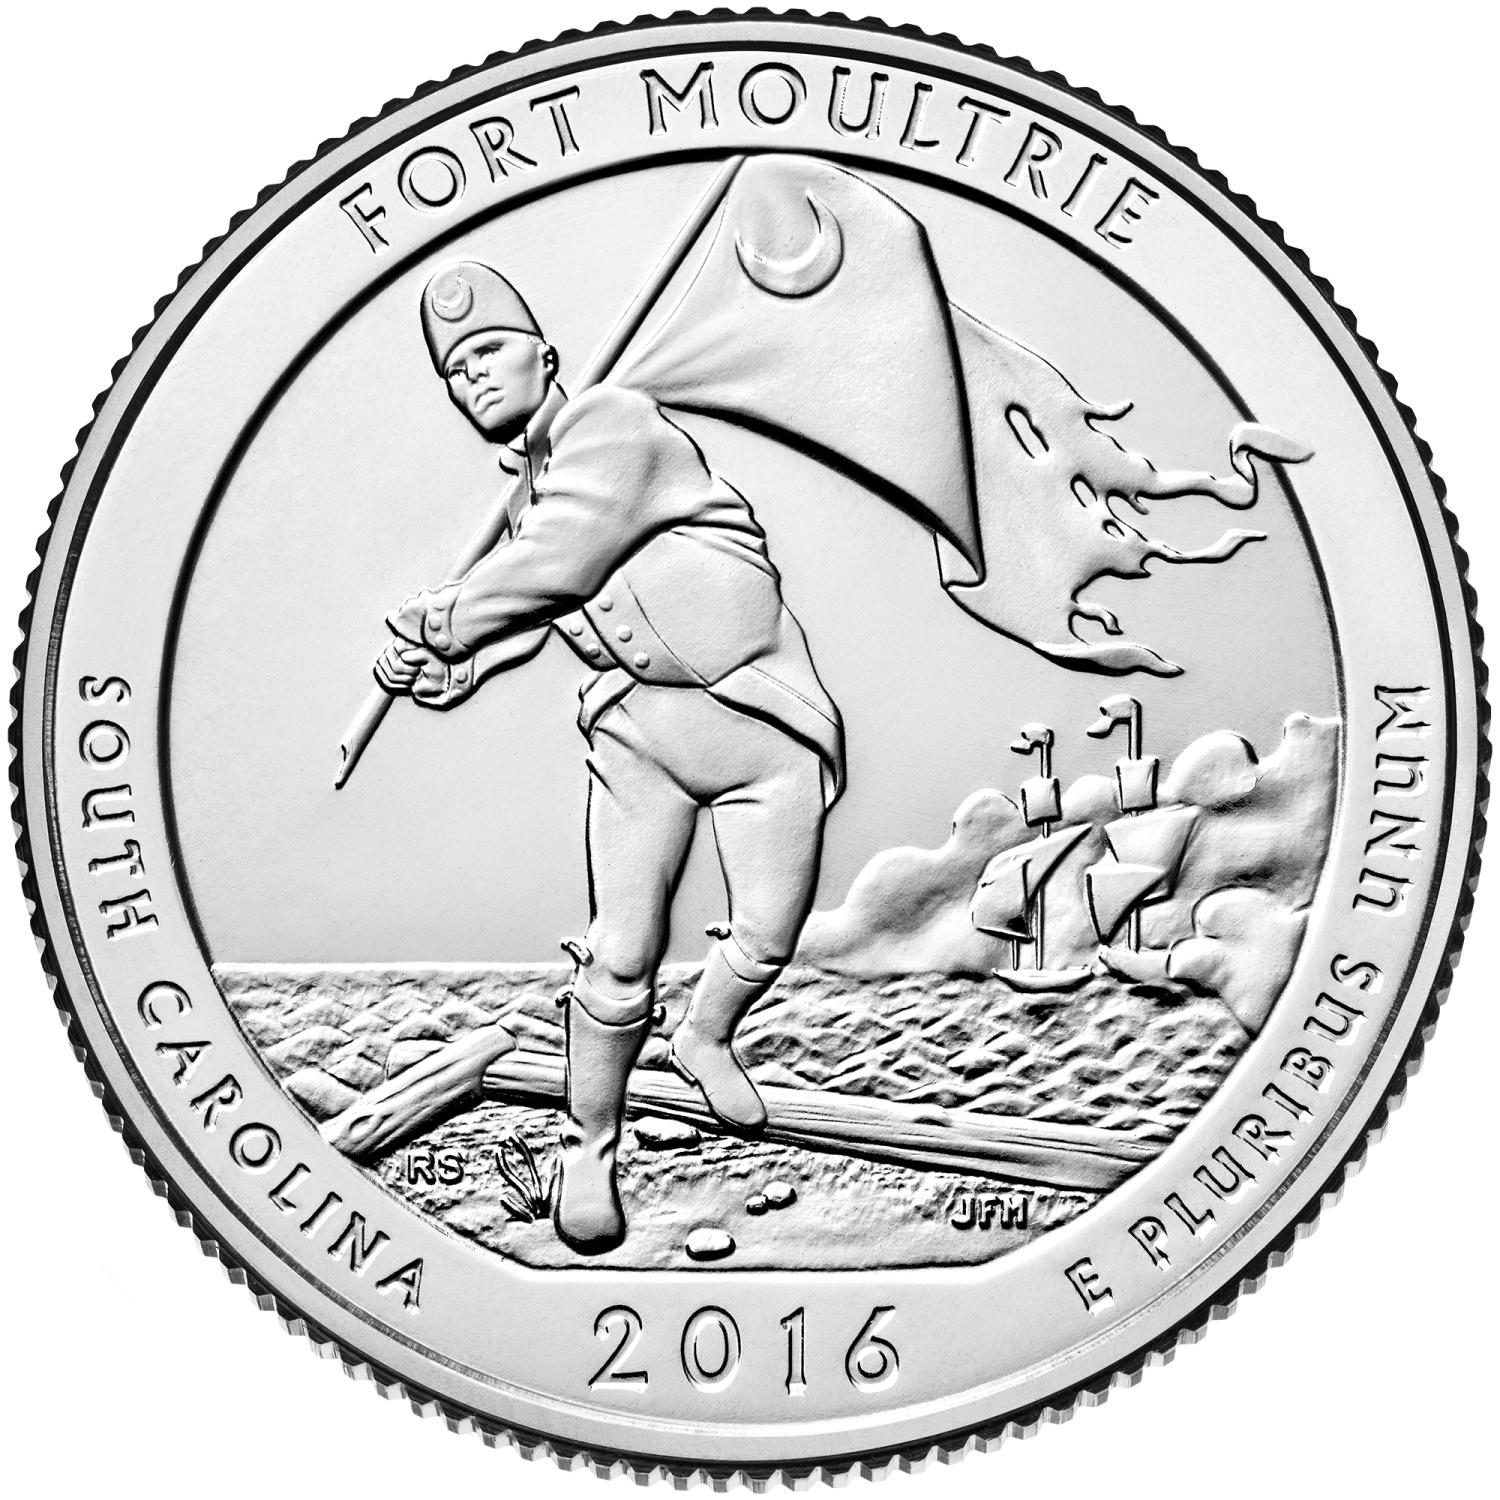 Quarter Dollar Commémorative des Etats-Unis 2016 - Fort Moultrie Monument